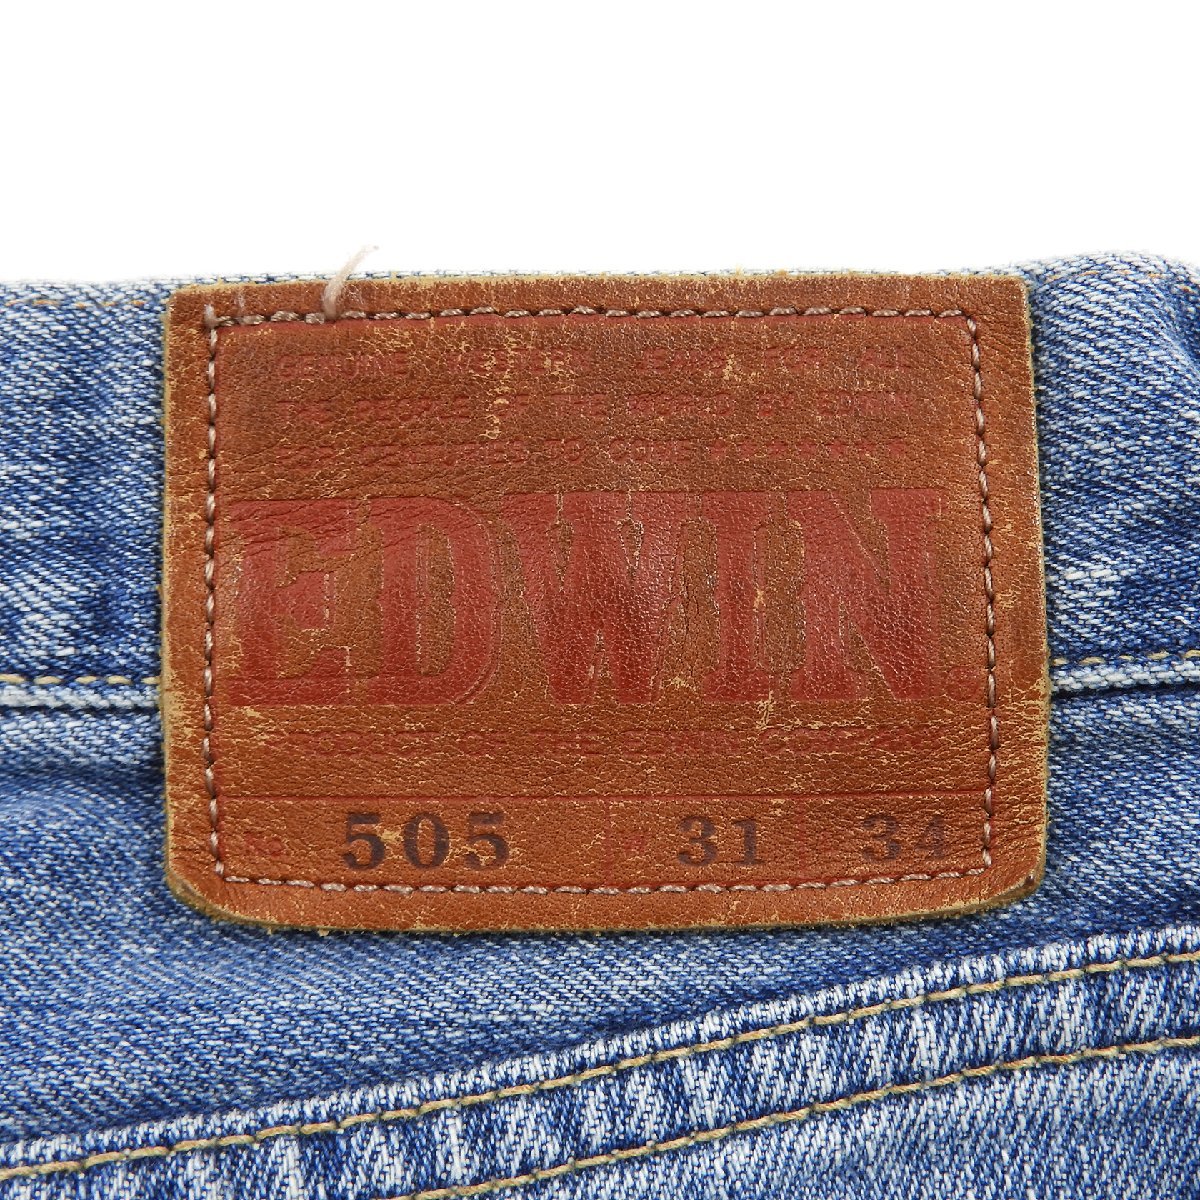 EDWIN 1505 Denim pants wide strut size 31 #15842 jeans American Casual Edwin 